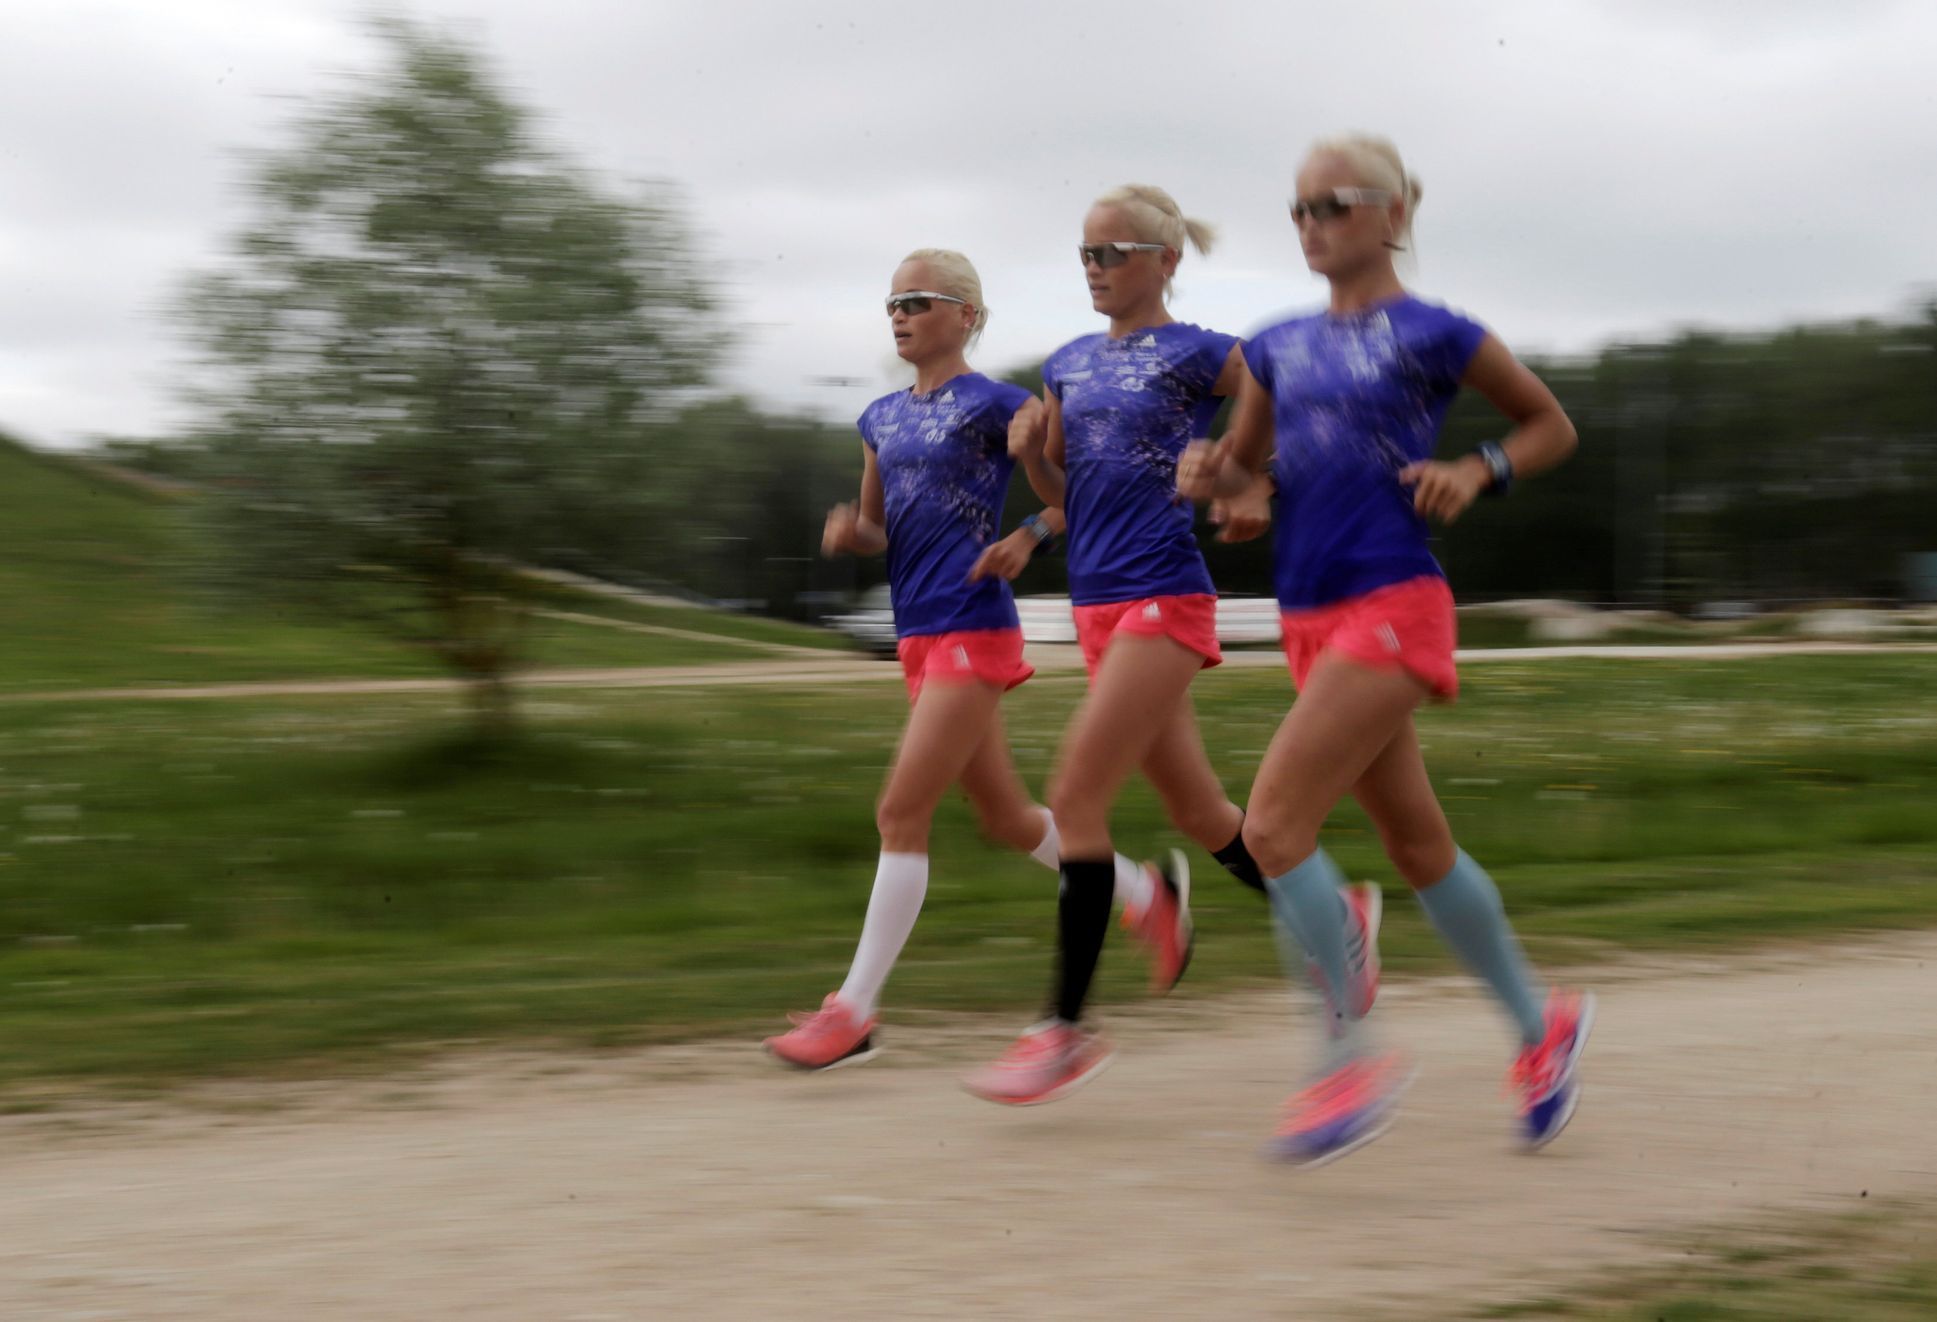 Estonská trojčata Luikovy, maratonské běžkyně jedoucí do Ria